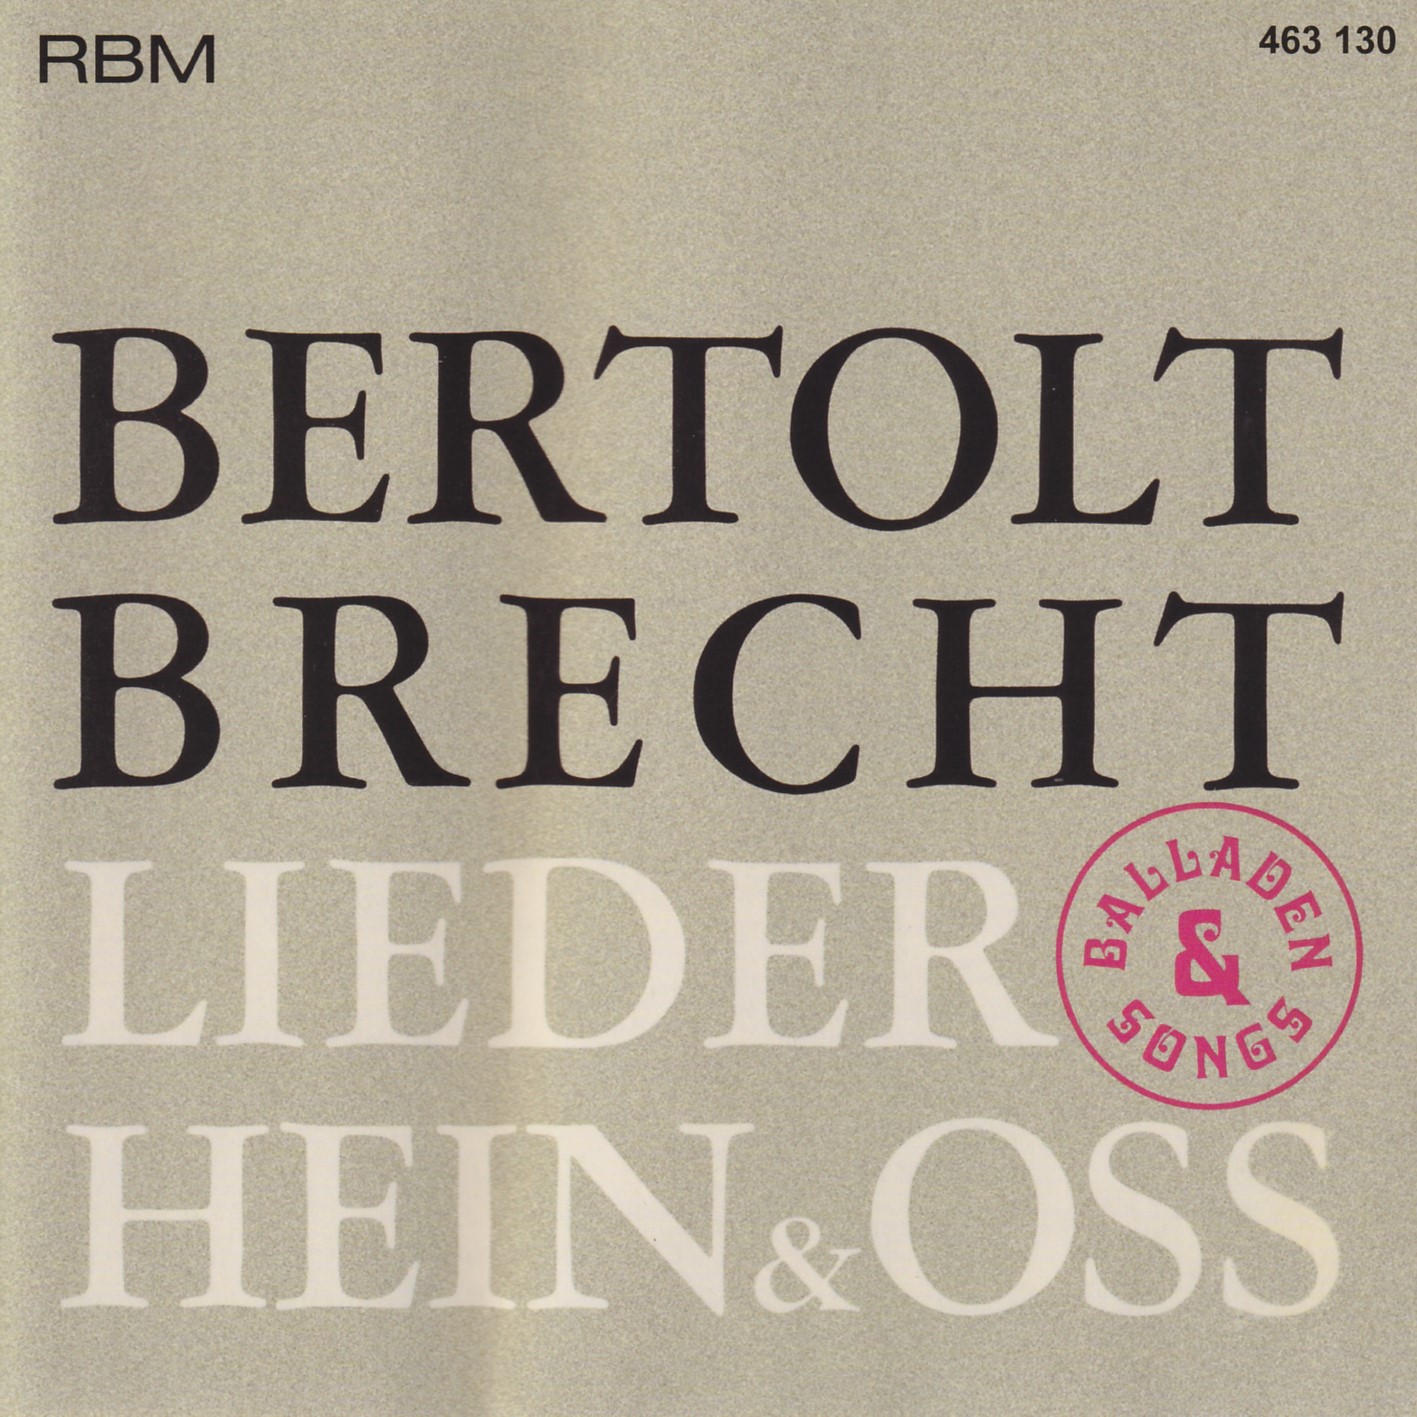 Hein & Oss - Bertolt Brecht Lieder, Balladen & Songs